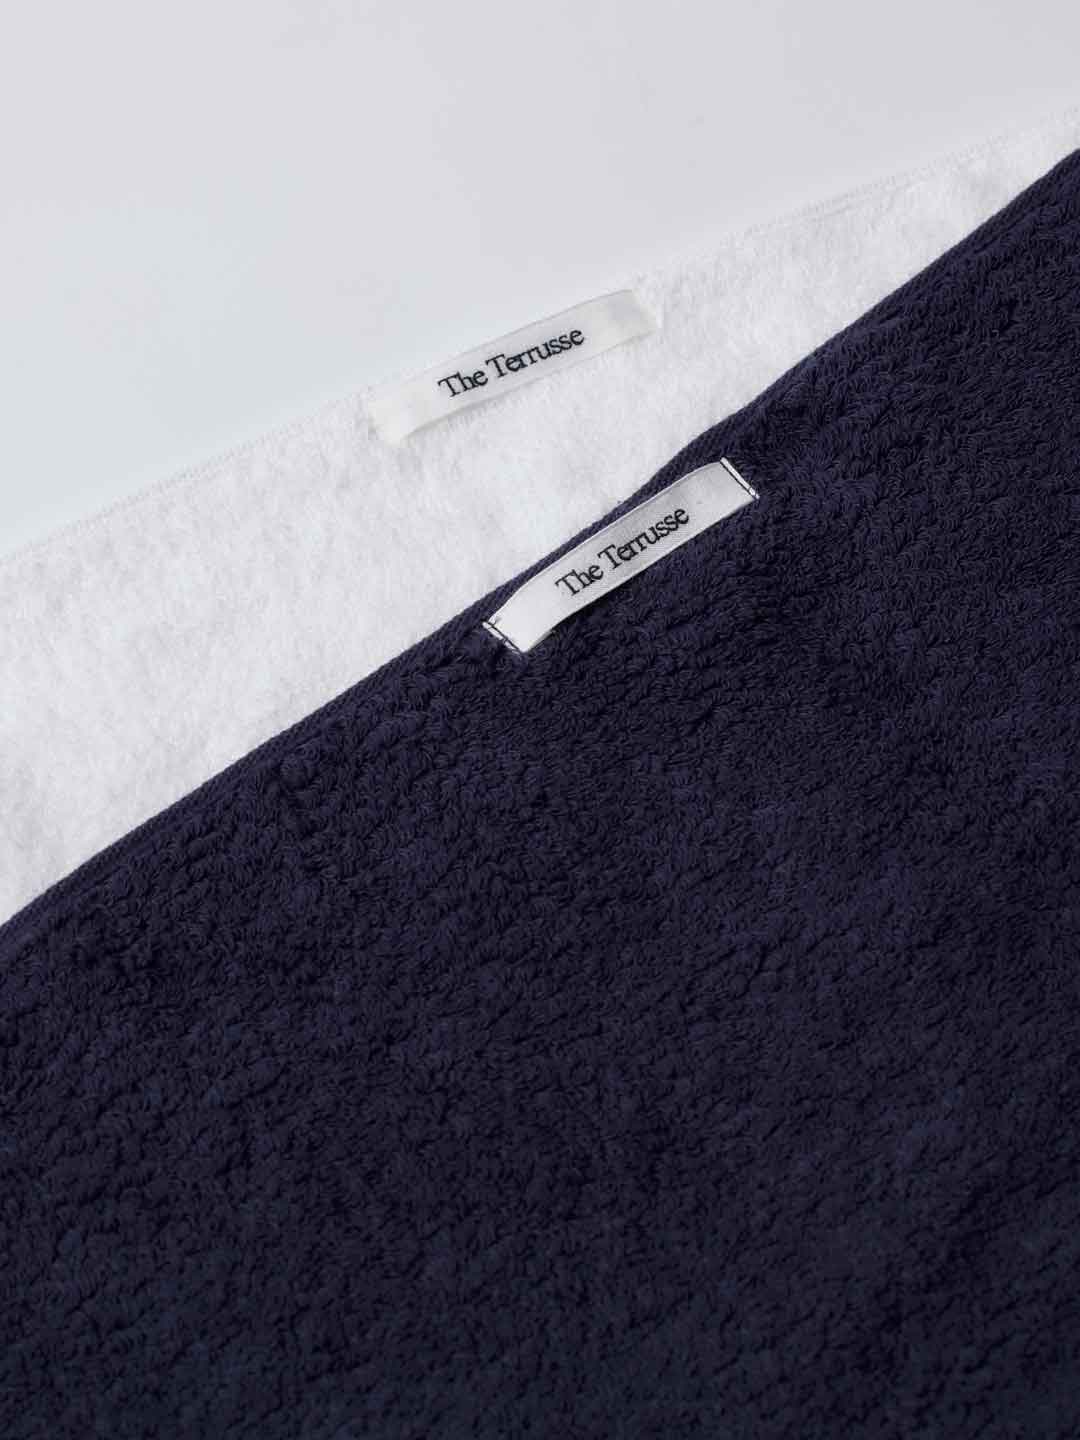 Bath Towel - Extra Soft - White